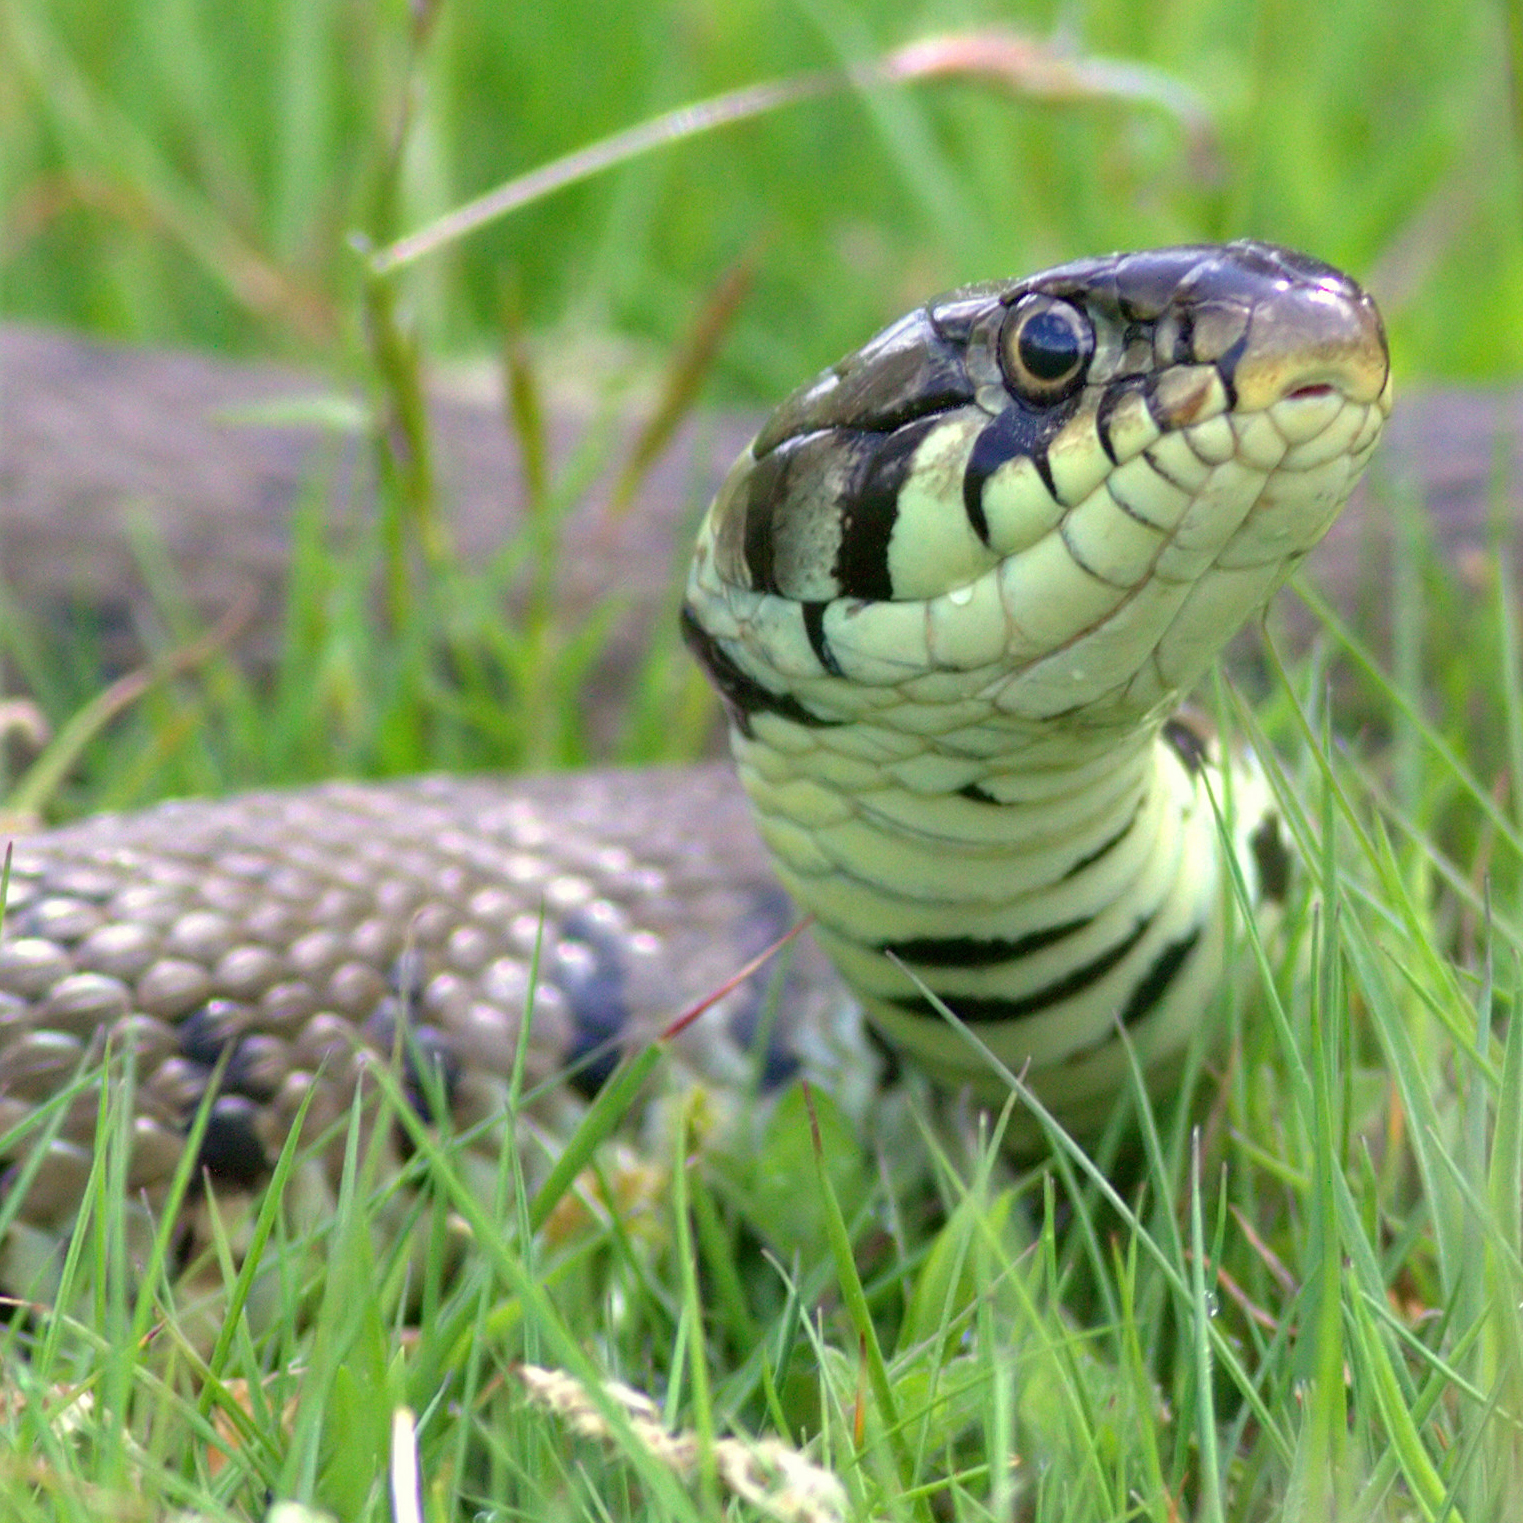 a close up of a grass-snake